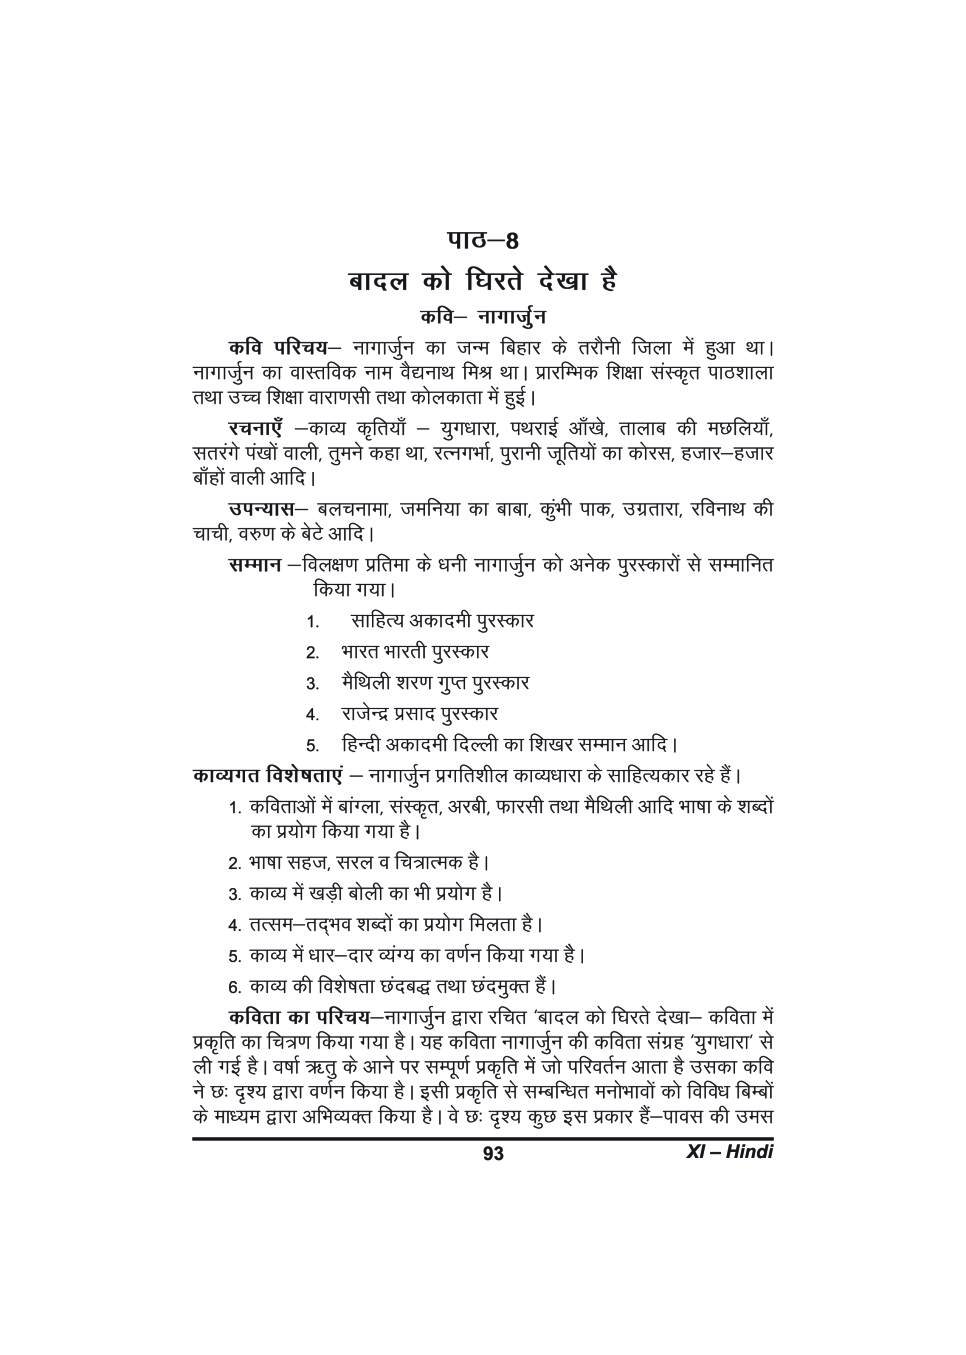 कक्षा 11 हिंदी के नोट्स - बादल को घिरते देखा है - Page 1